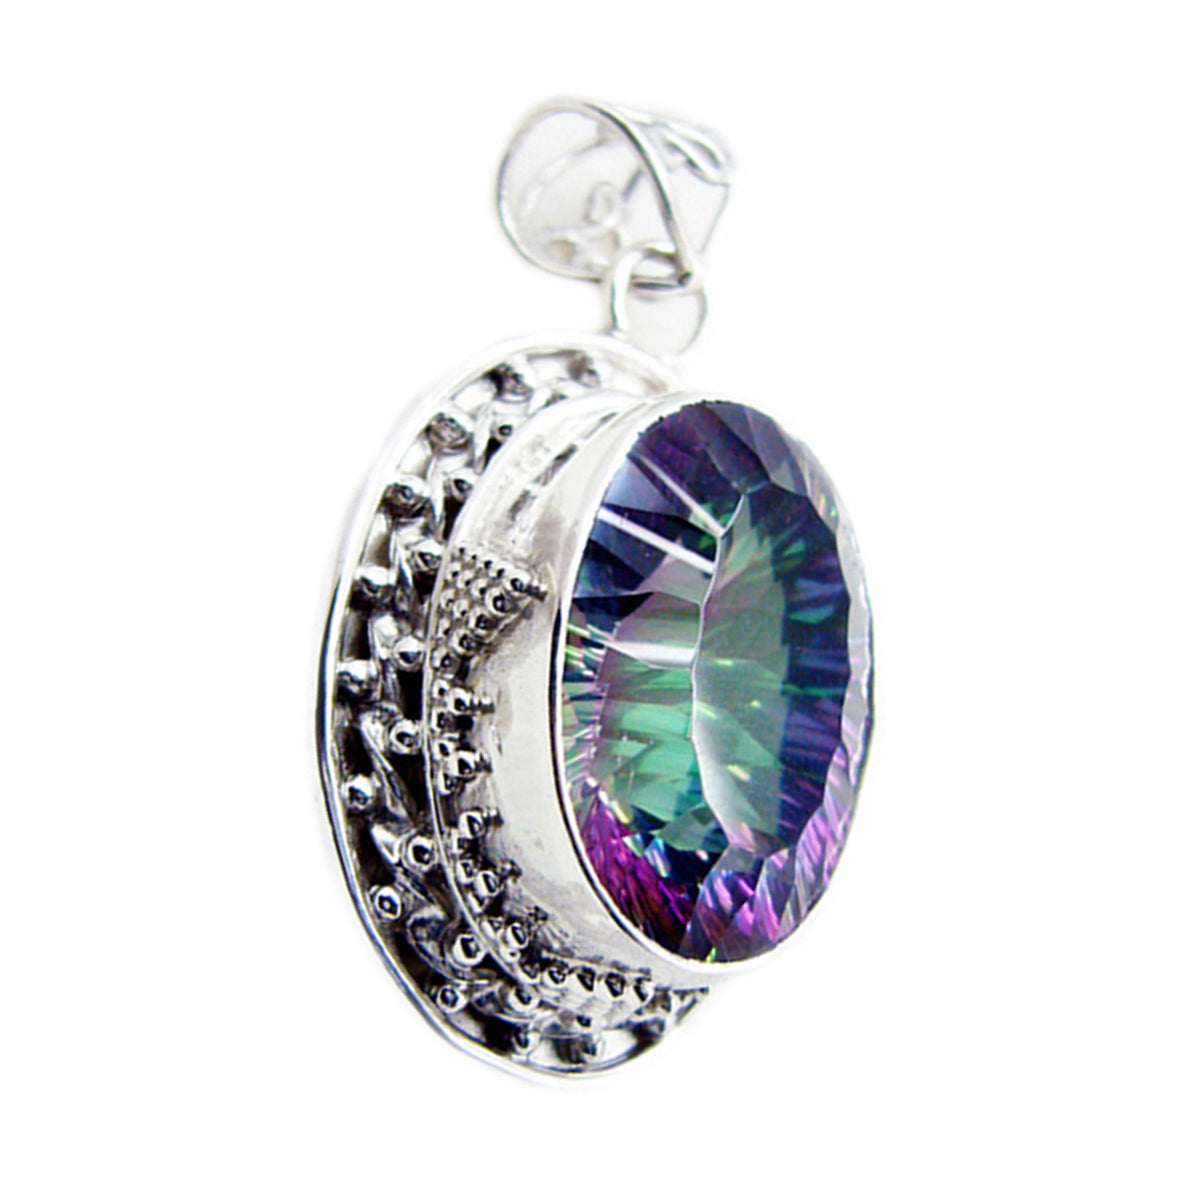 Riyo pierres précieuses attrayantes ovale à facettes multicolore quartz mystique pendentif en argent cadeau pour fiançailles